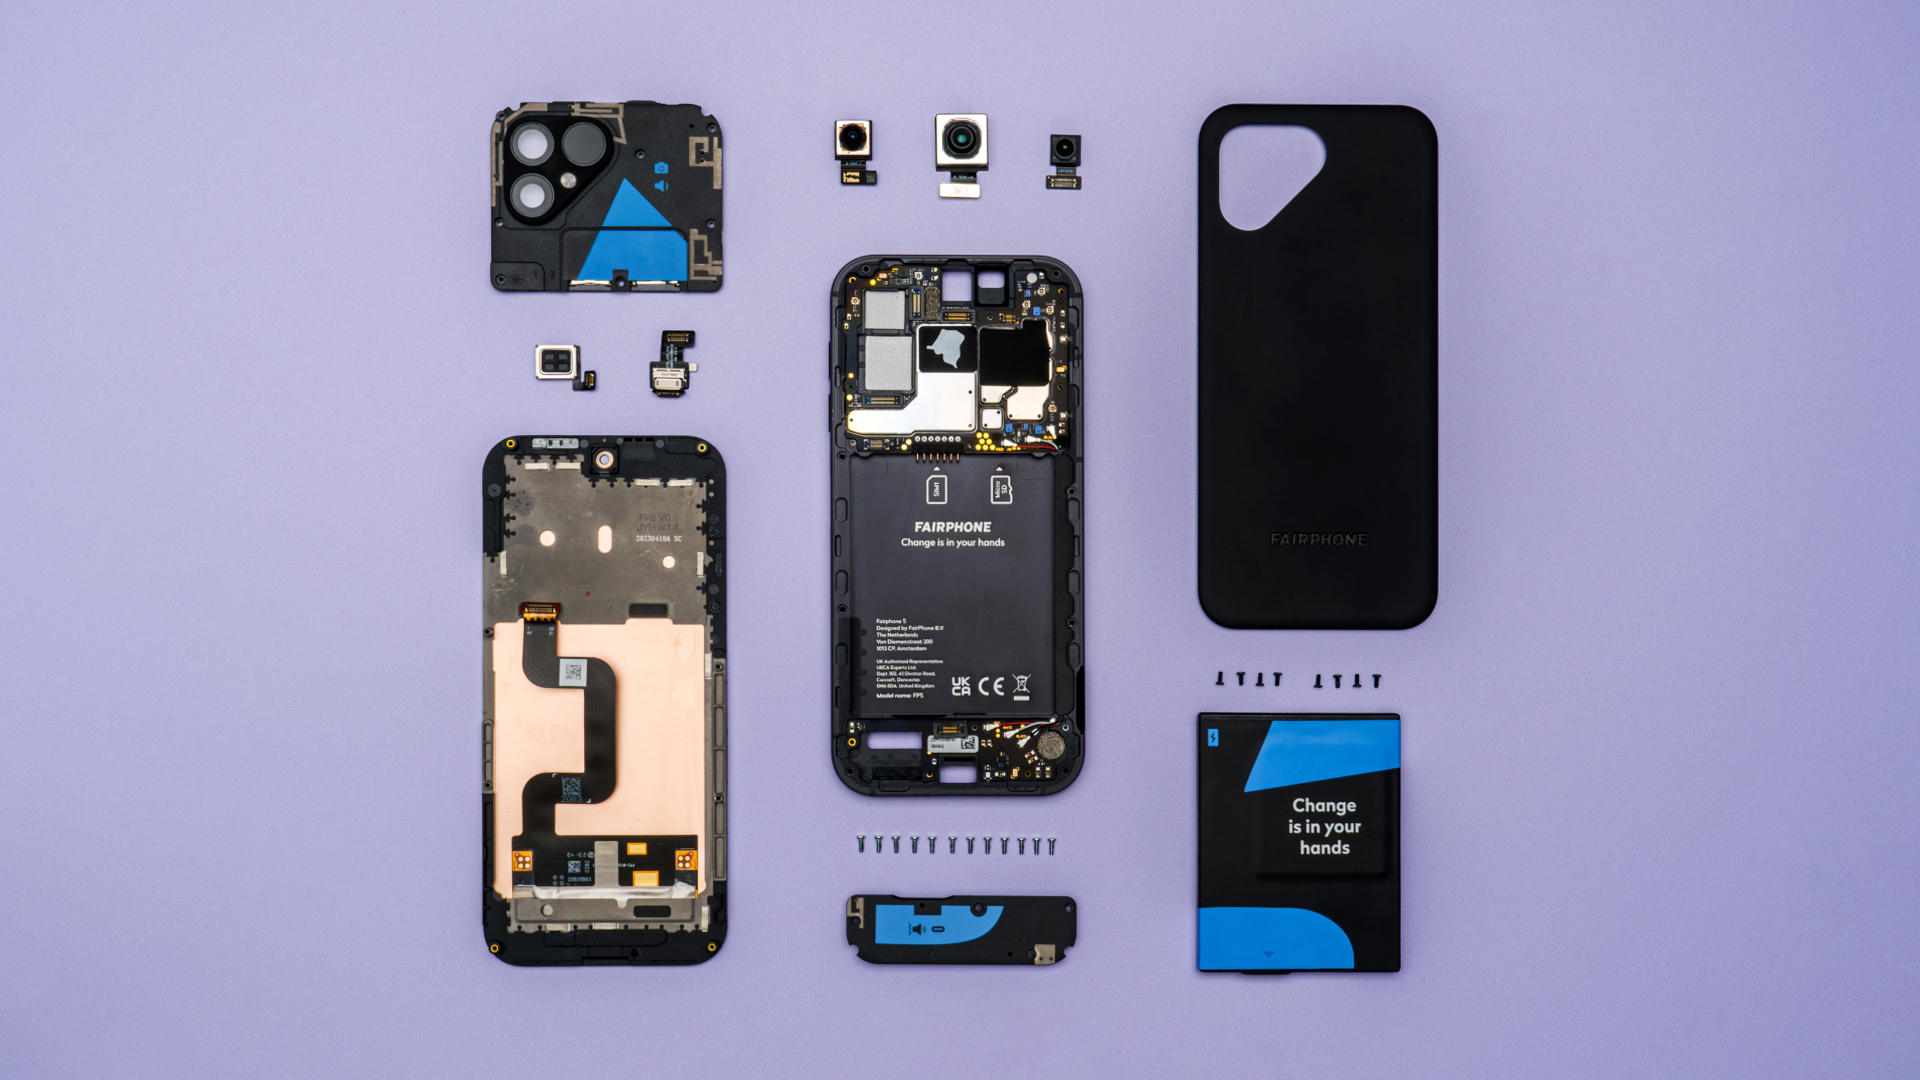 Rozłożony smartfon na fioletowym tle, pokazujący zewnętrzną obudowę, baterię, moduły kamery oraz inne komponenty wewnętrzne.